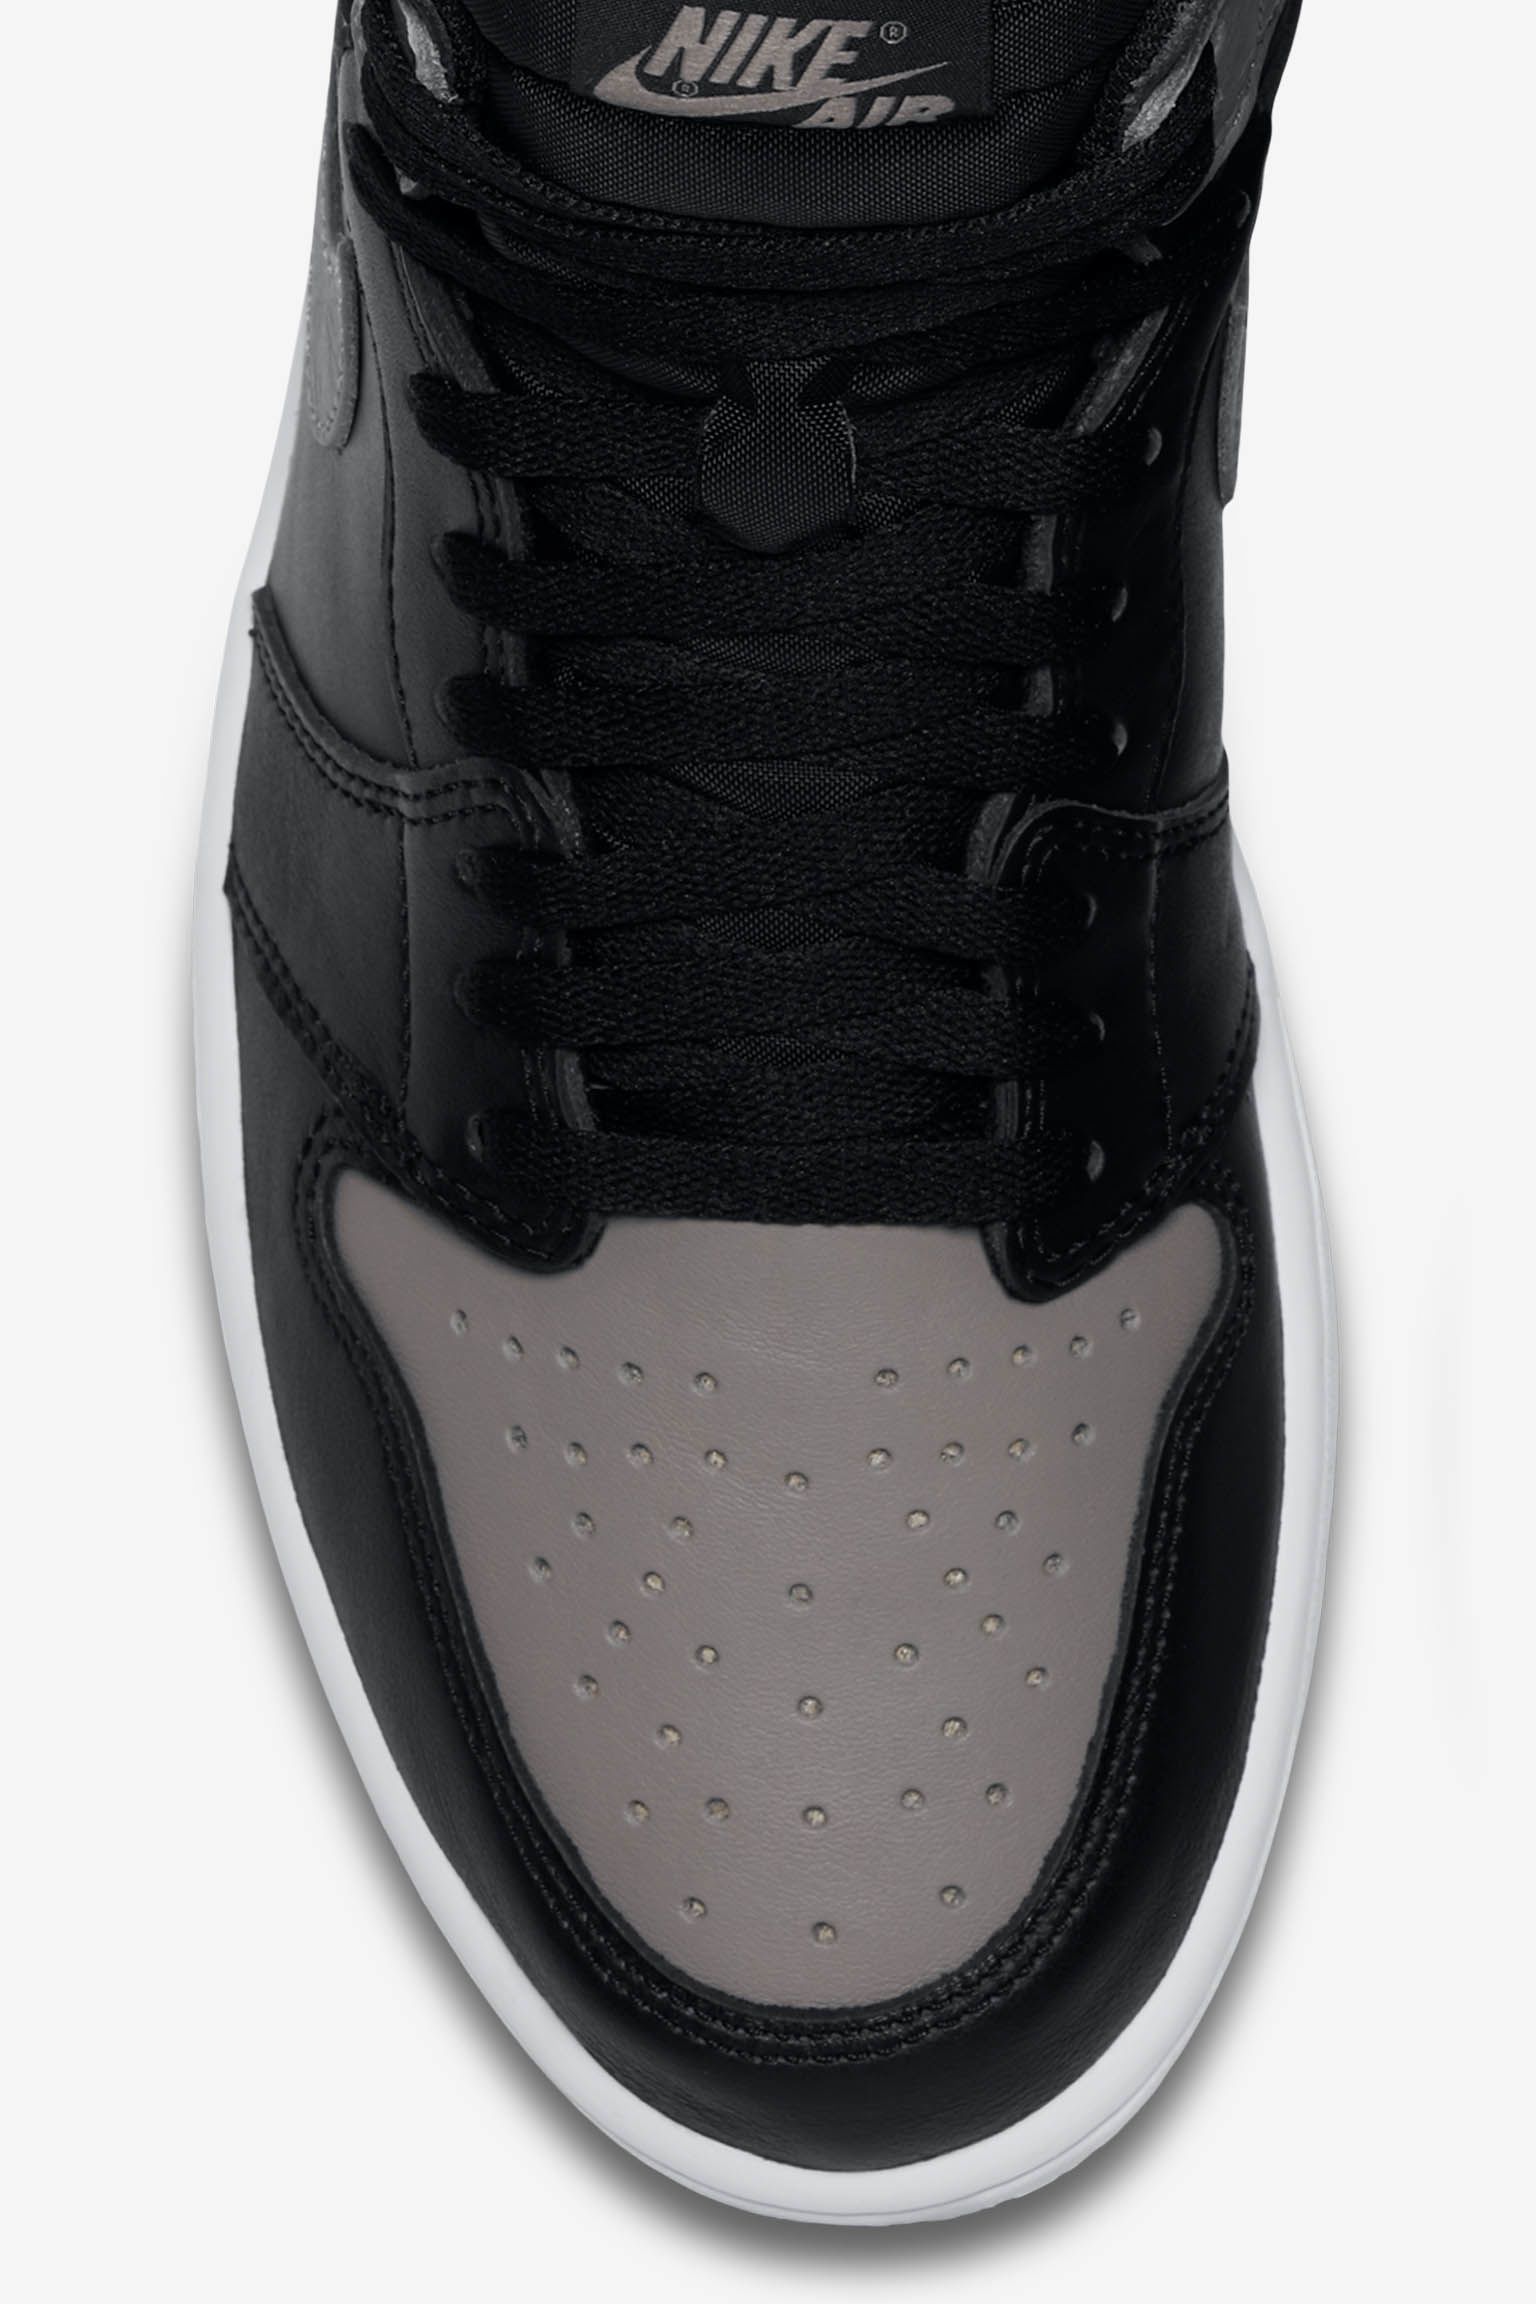 Shadow' Air Jordan 1s Available Early